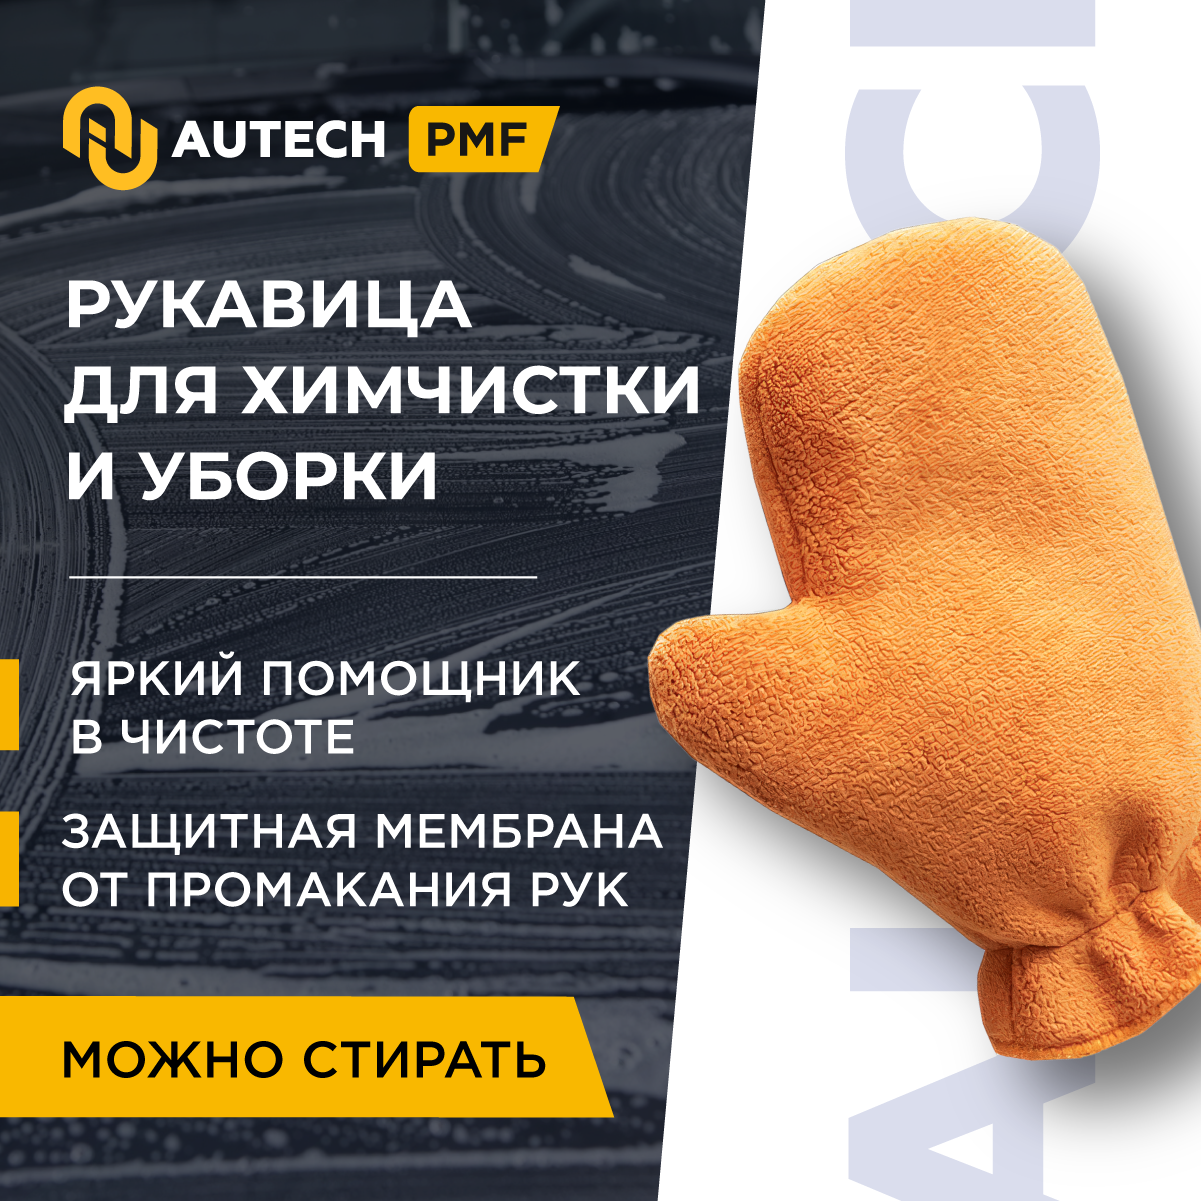 AuTech | Микрофибровая рукавица для химчистки и уборки авто.